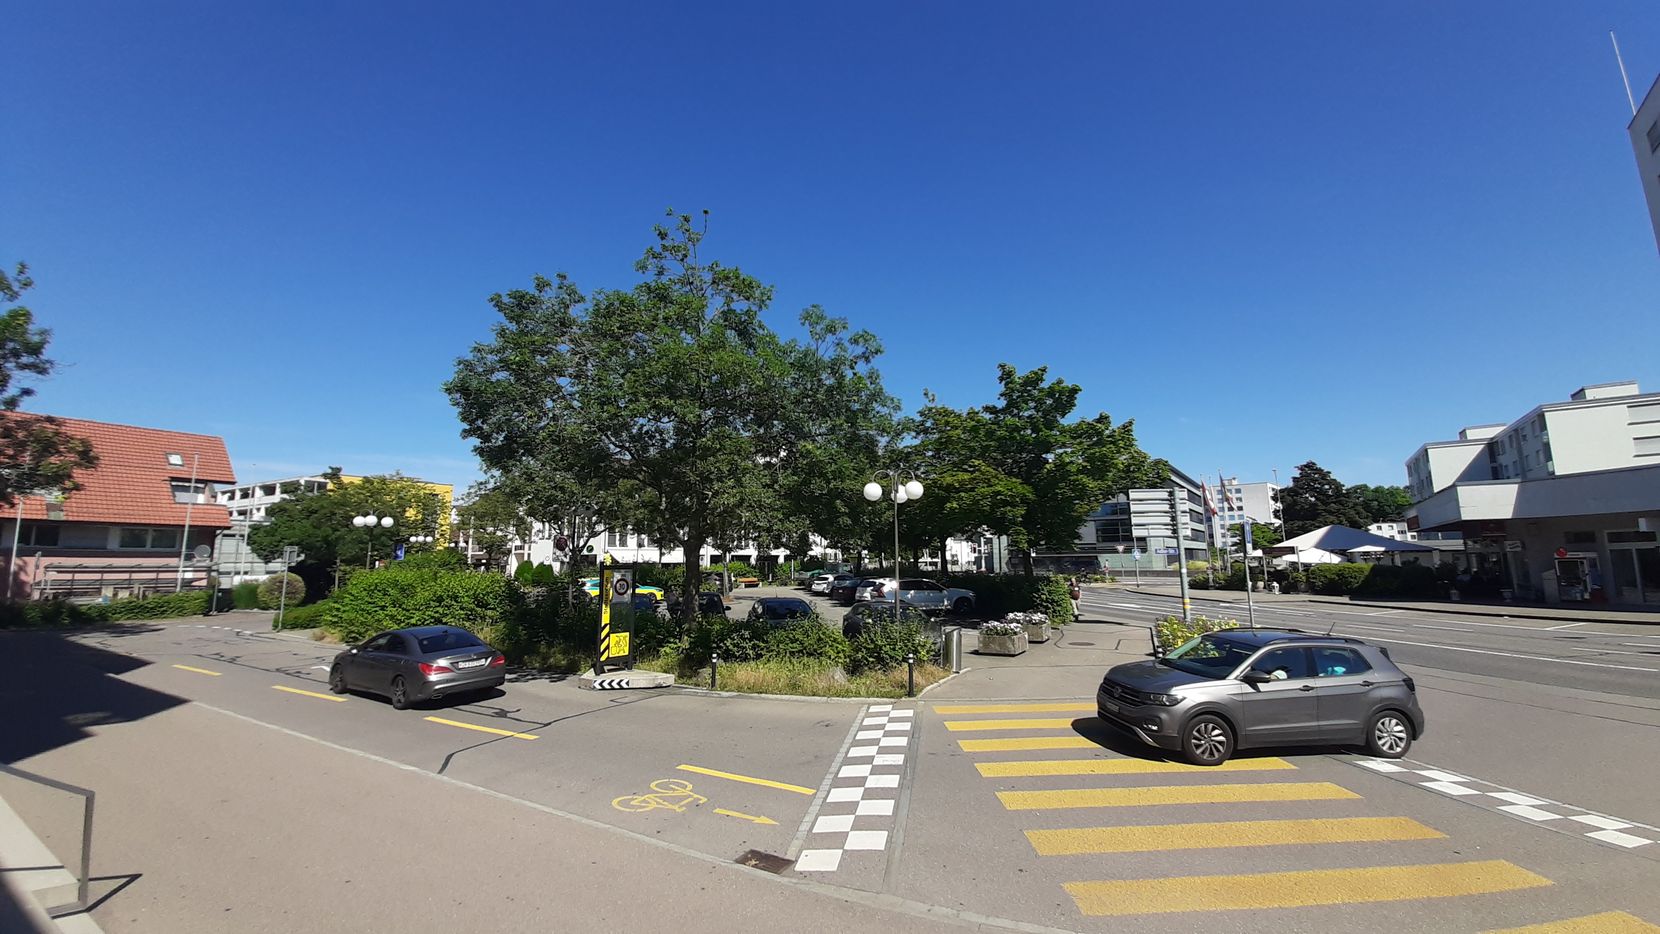 Ein Parkplatz mit Autos und Bäumen im Zentrum einer Agglomerationsstadt.